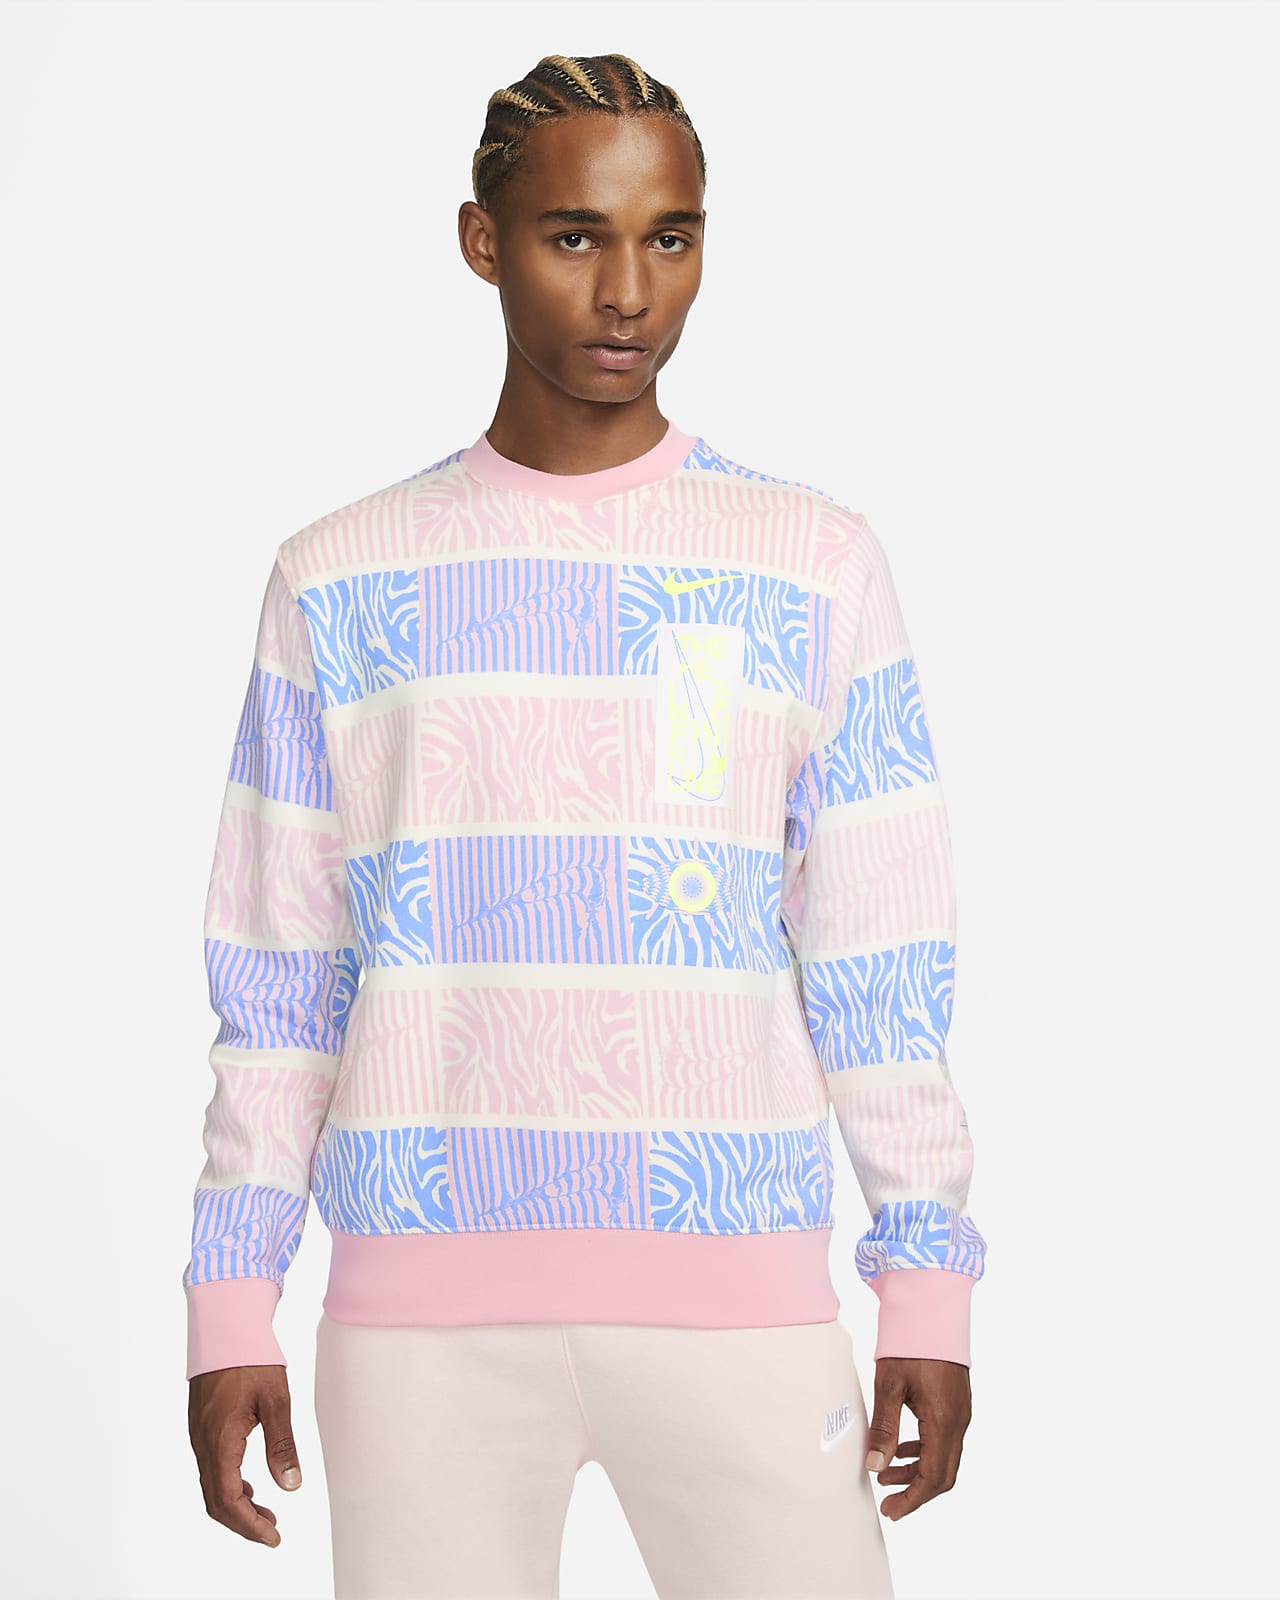 Louis Vuitton Regular Sweatshirts for Men for Sale, Shop Men's Athletic  Clothes